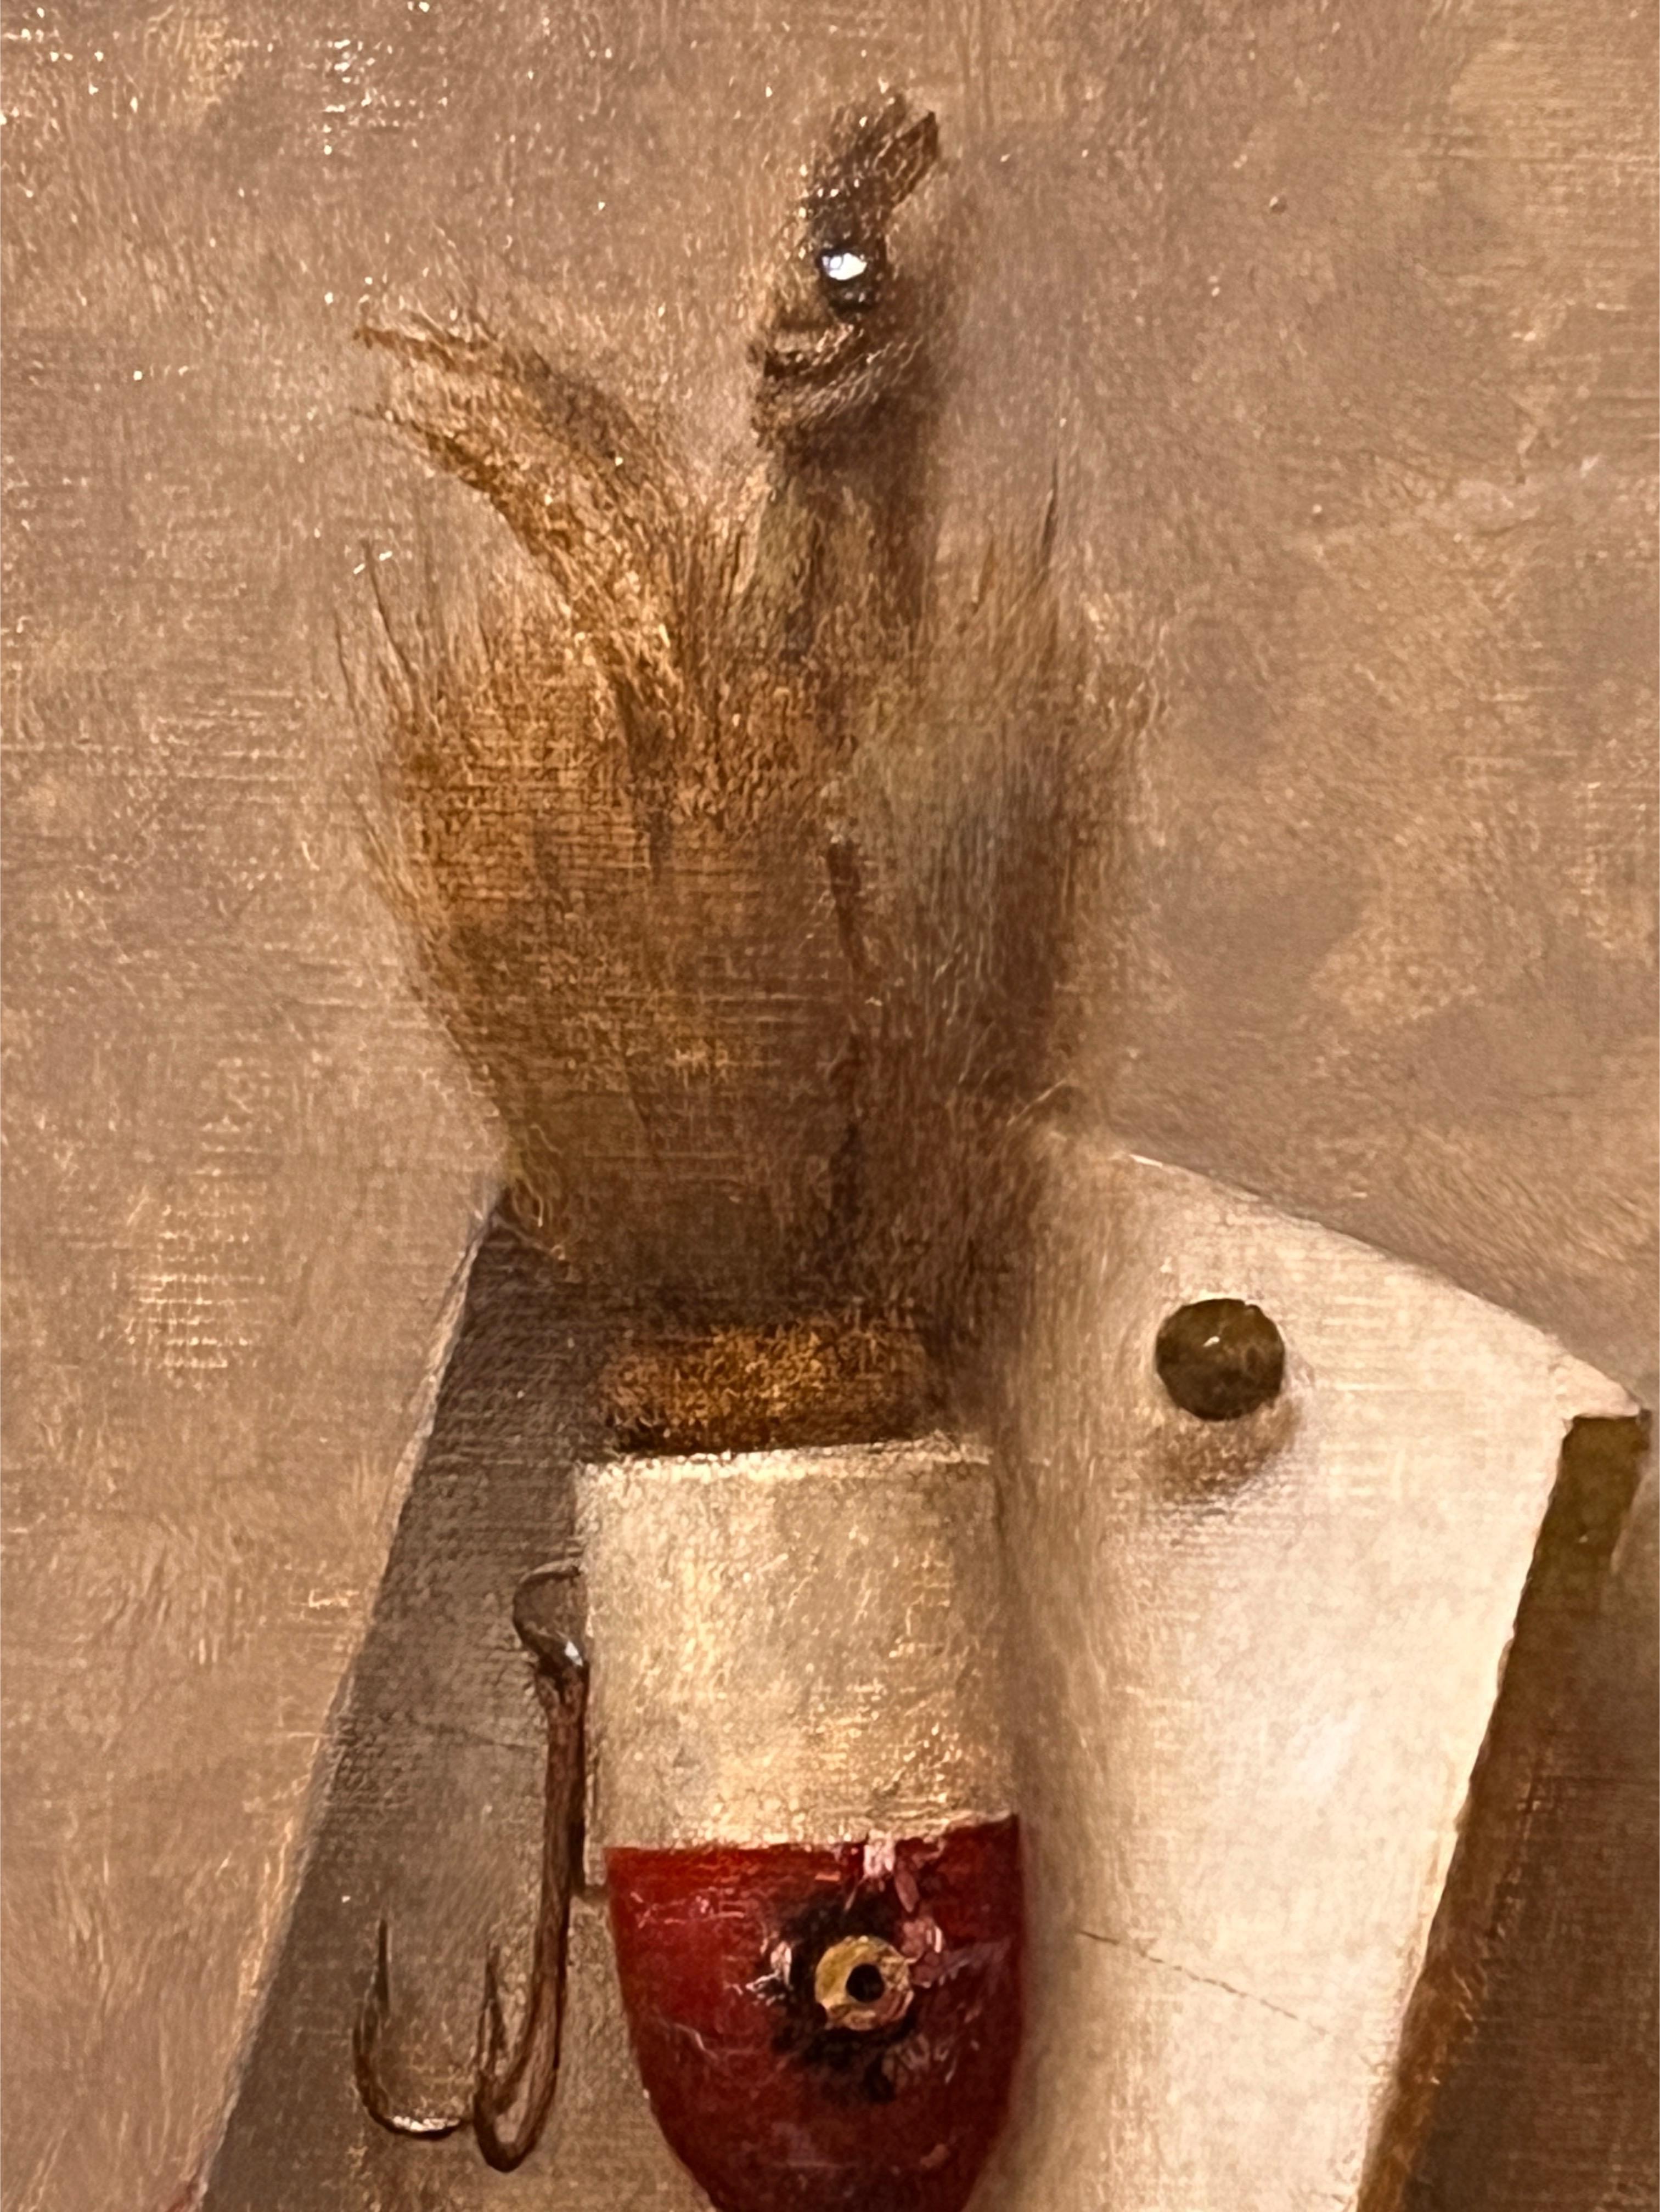 Une peinture à l'huile originale sur panneau de lin représentant un leurre de pêche antique, encadrée dans un cadre fait main par l'un des meilleurs encadreurs de New York.

Le maître peintre de natures mortes Dale Zinkowski est né à New York et ses